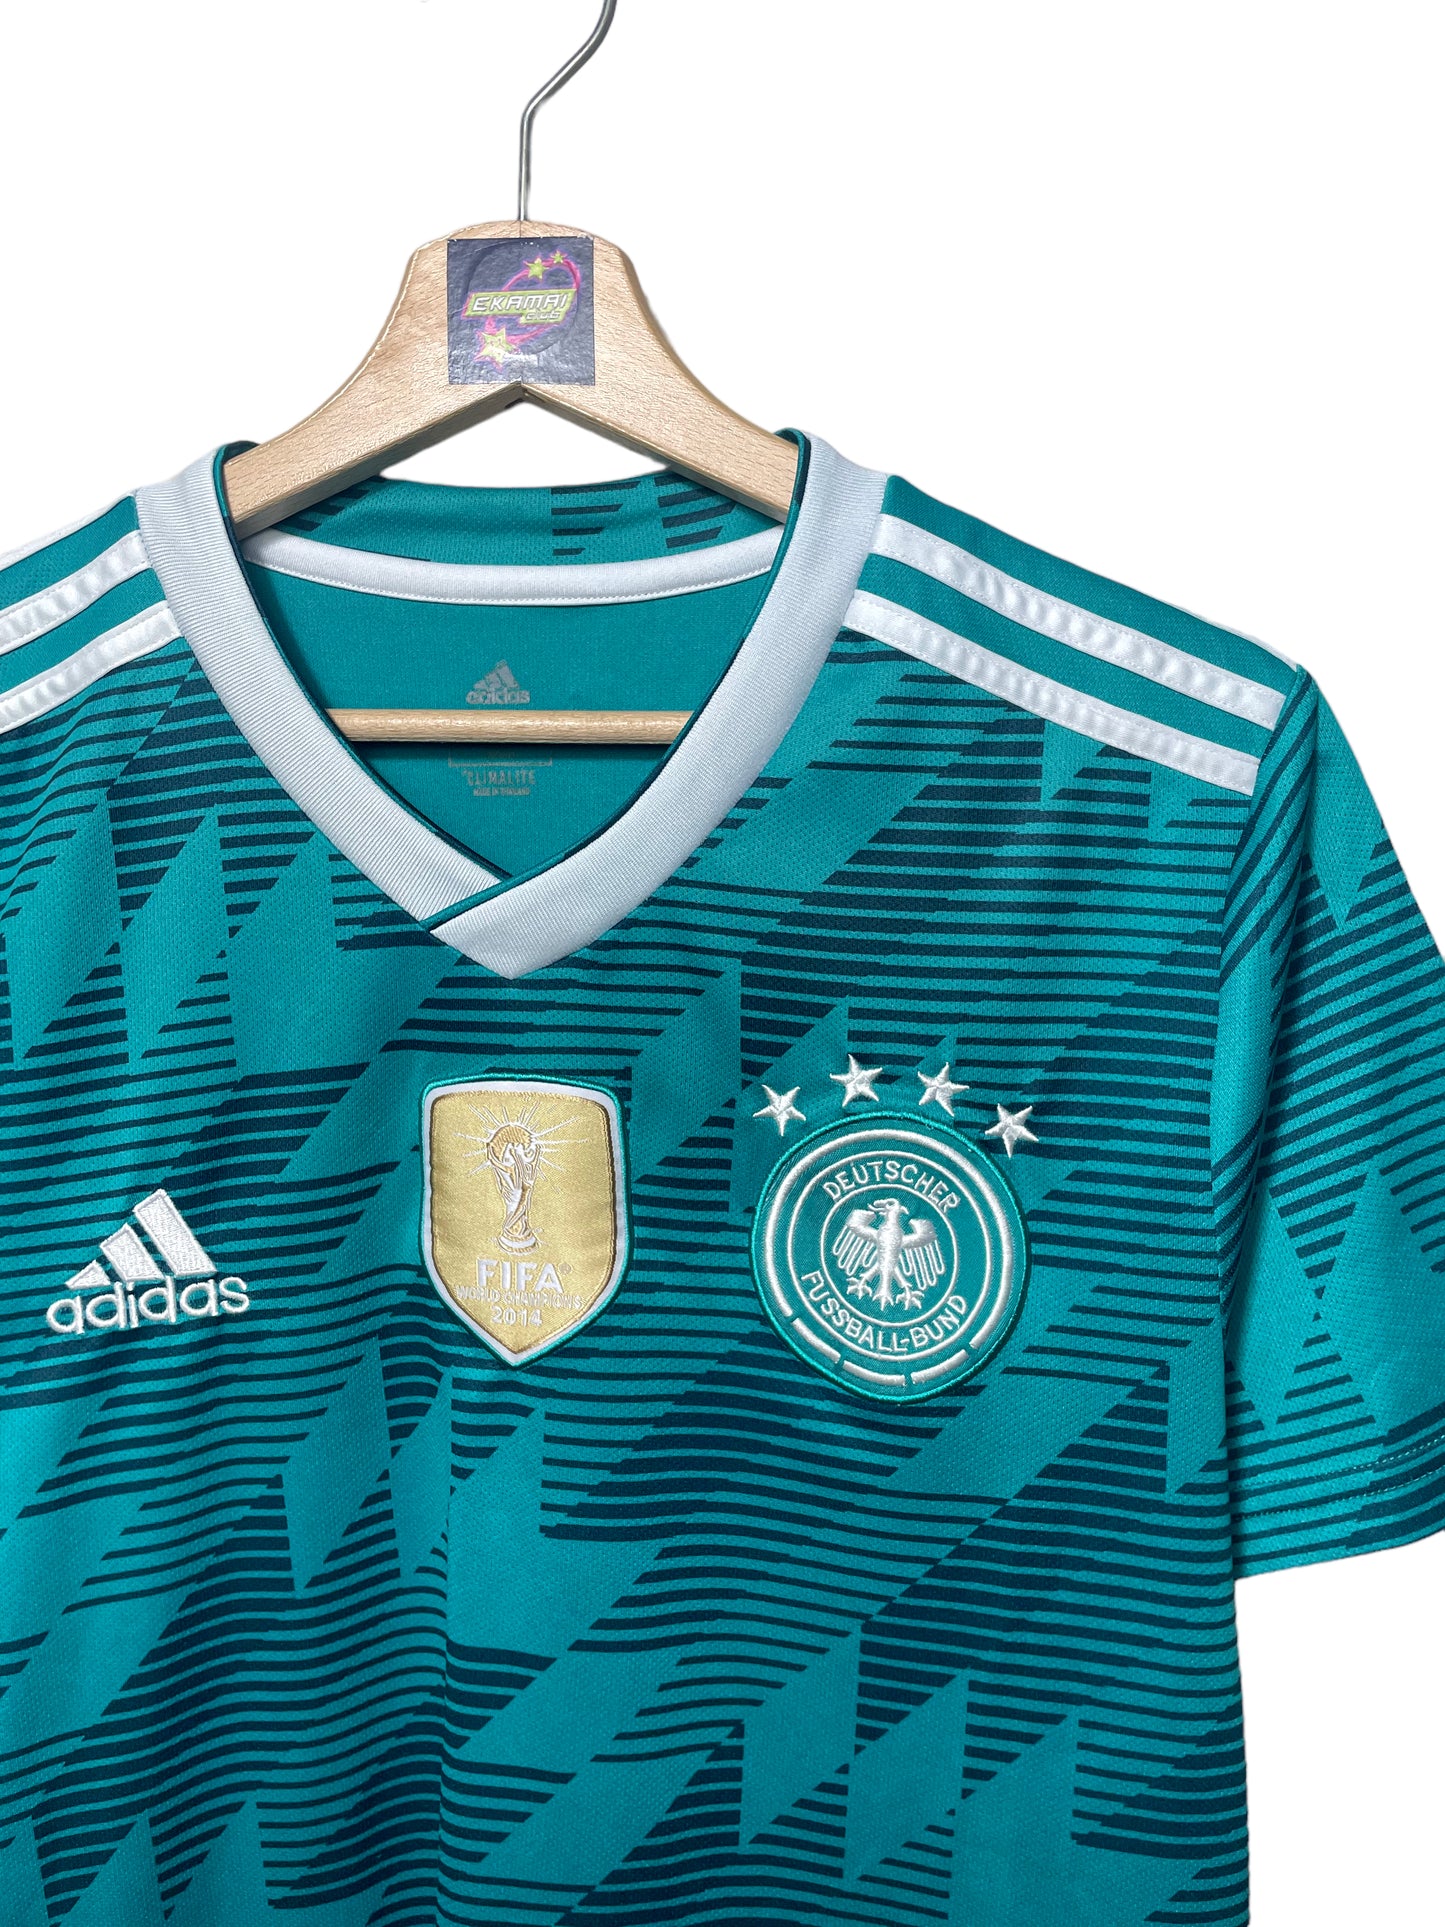 Camiseta Fútbol 2014 Deutscher